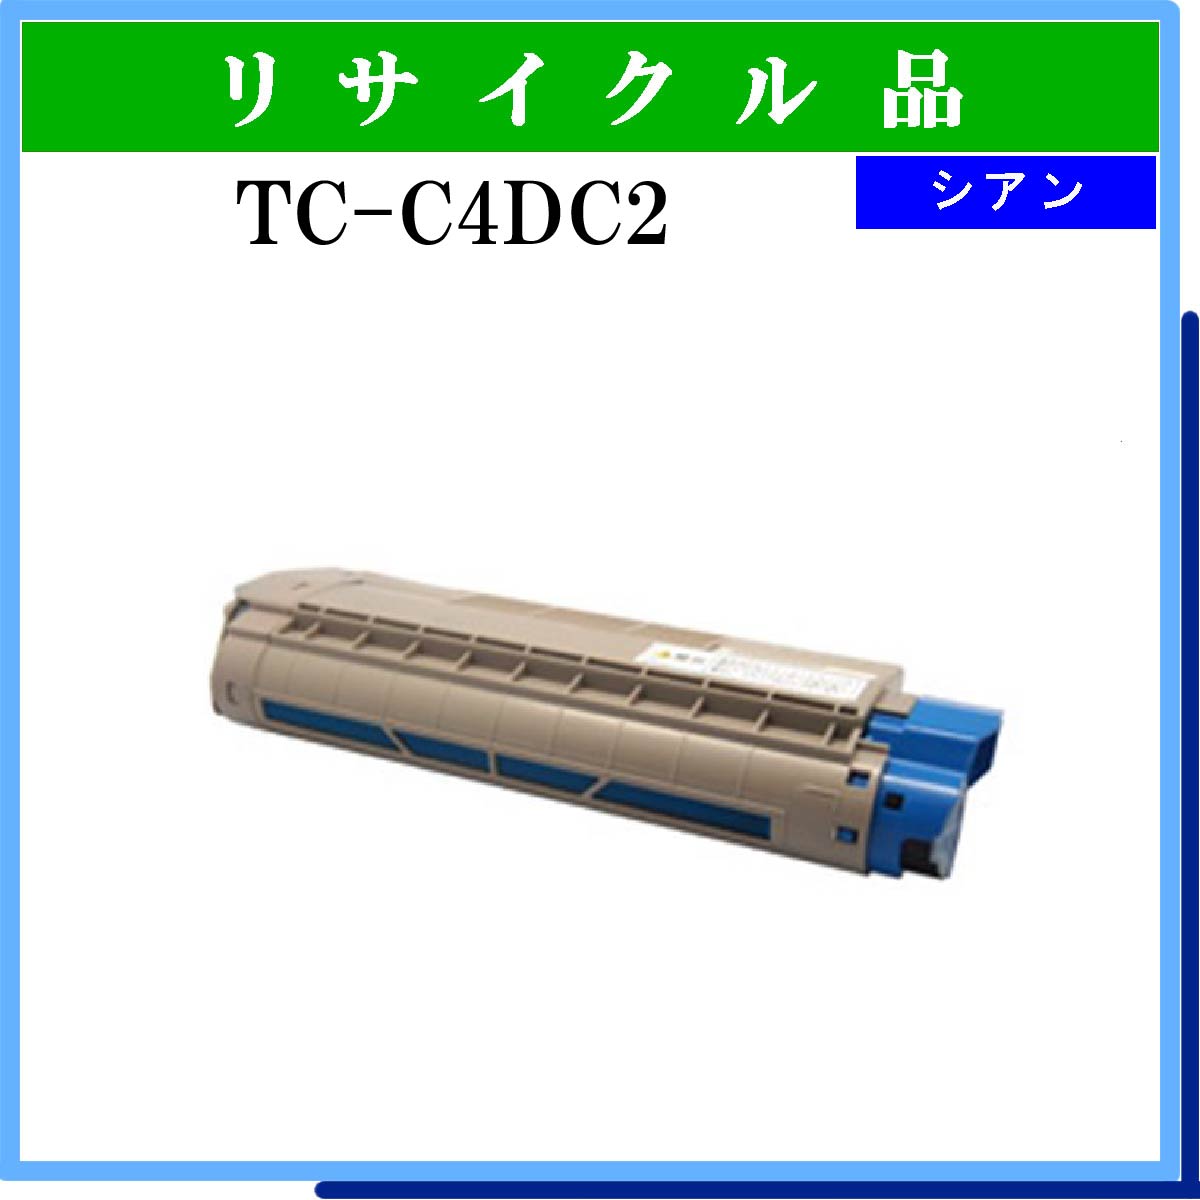 TC-C4DC2